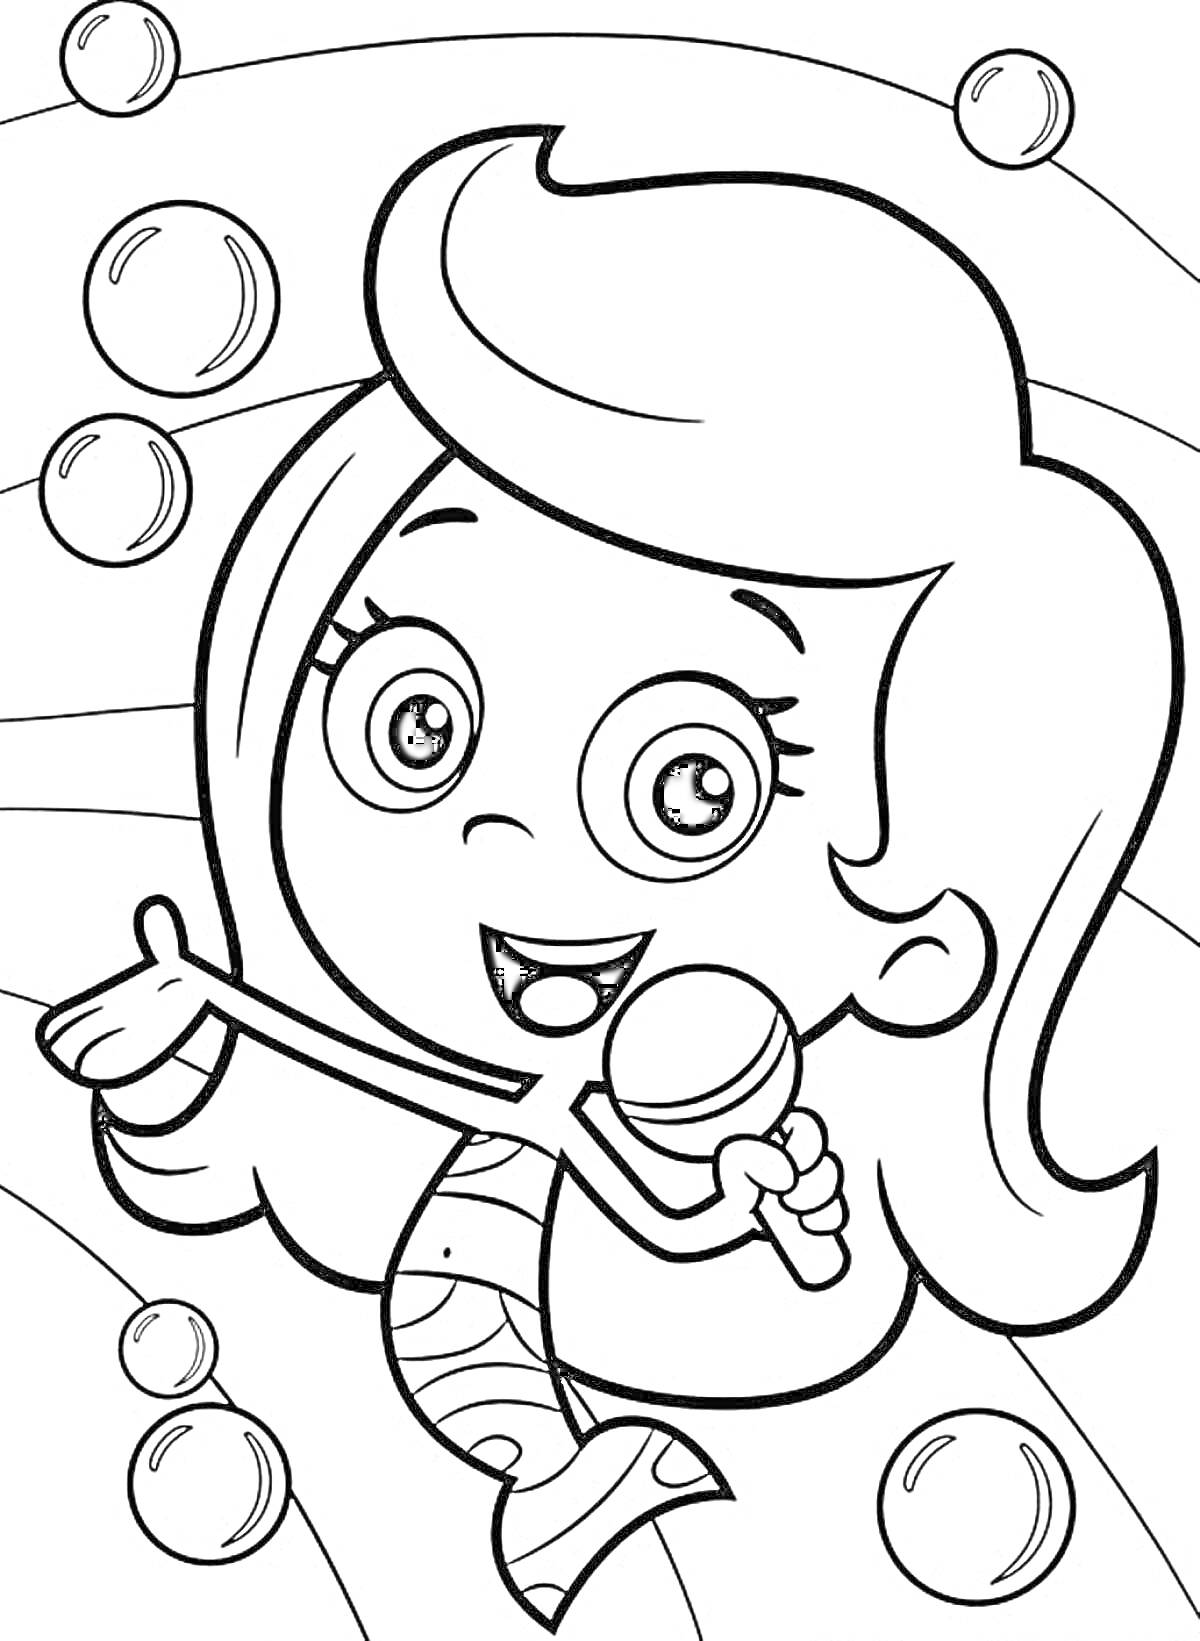 Раскраска Девочка-русалка с микрофоном и пузырьками